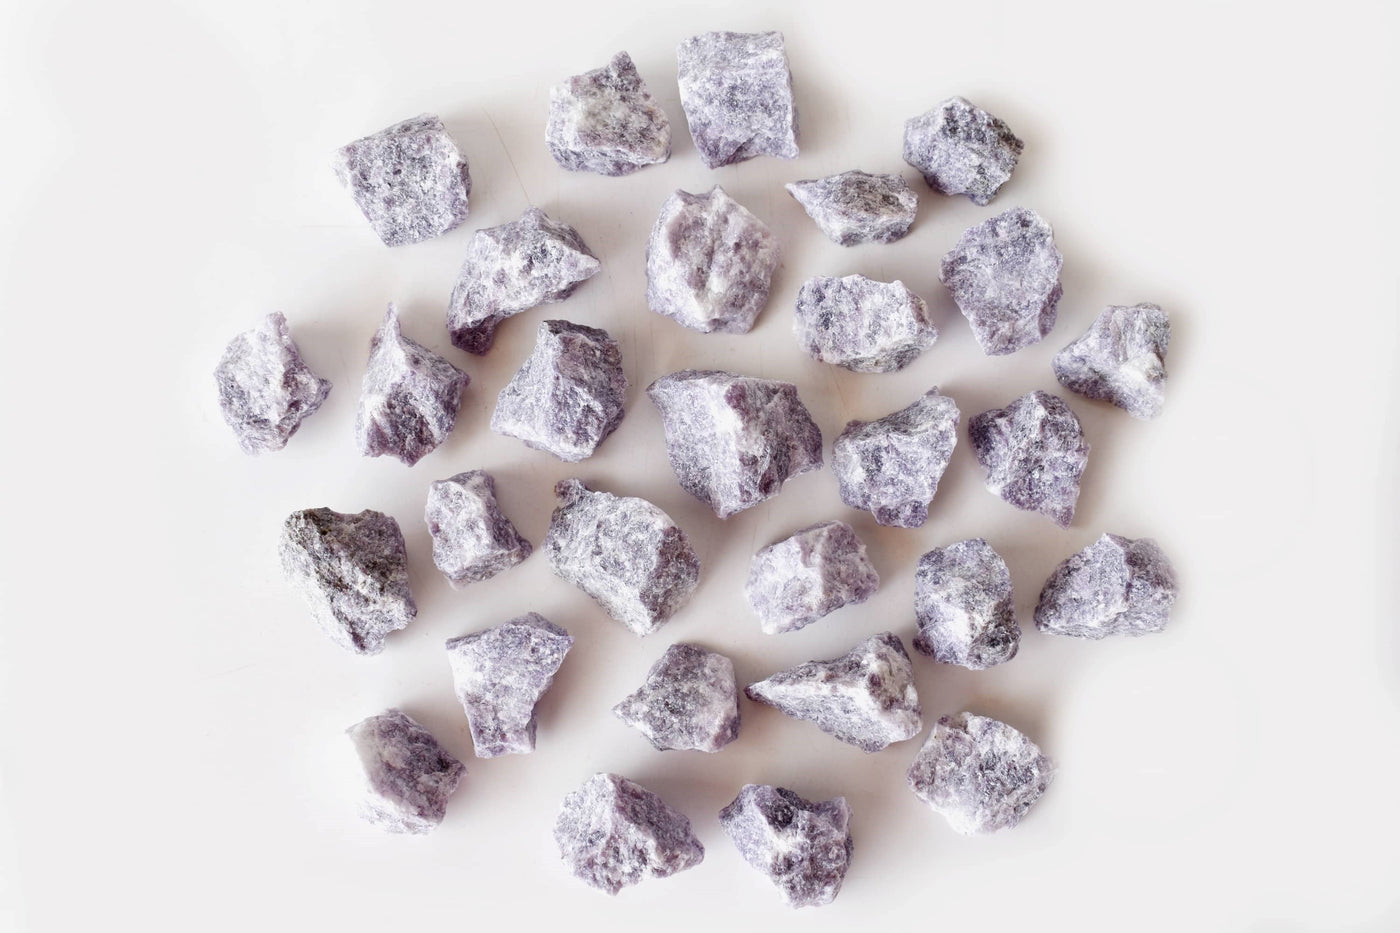 Pierres naturelles brutes de lépidolite Pierres brutes de lépidolite de 1 pouce, morceaux de cristal brut en taille de paquet 4 oz, 1/2 lb, 1 lb.